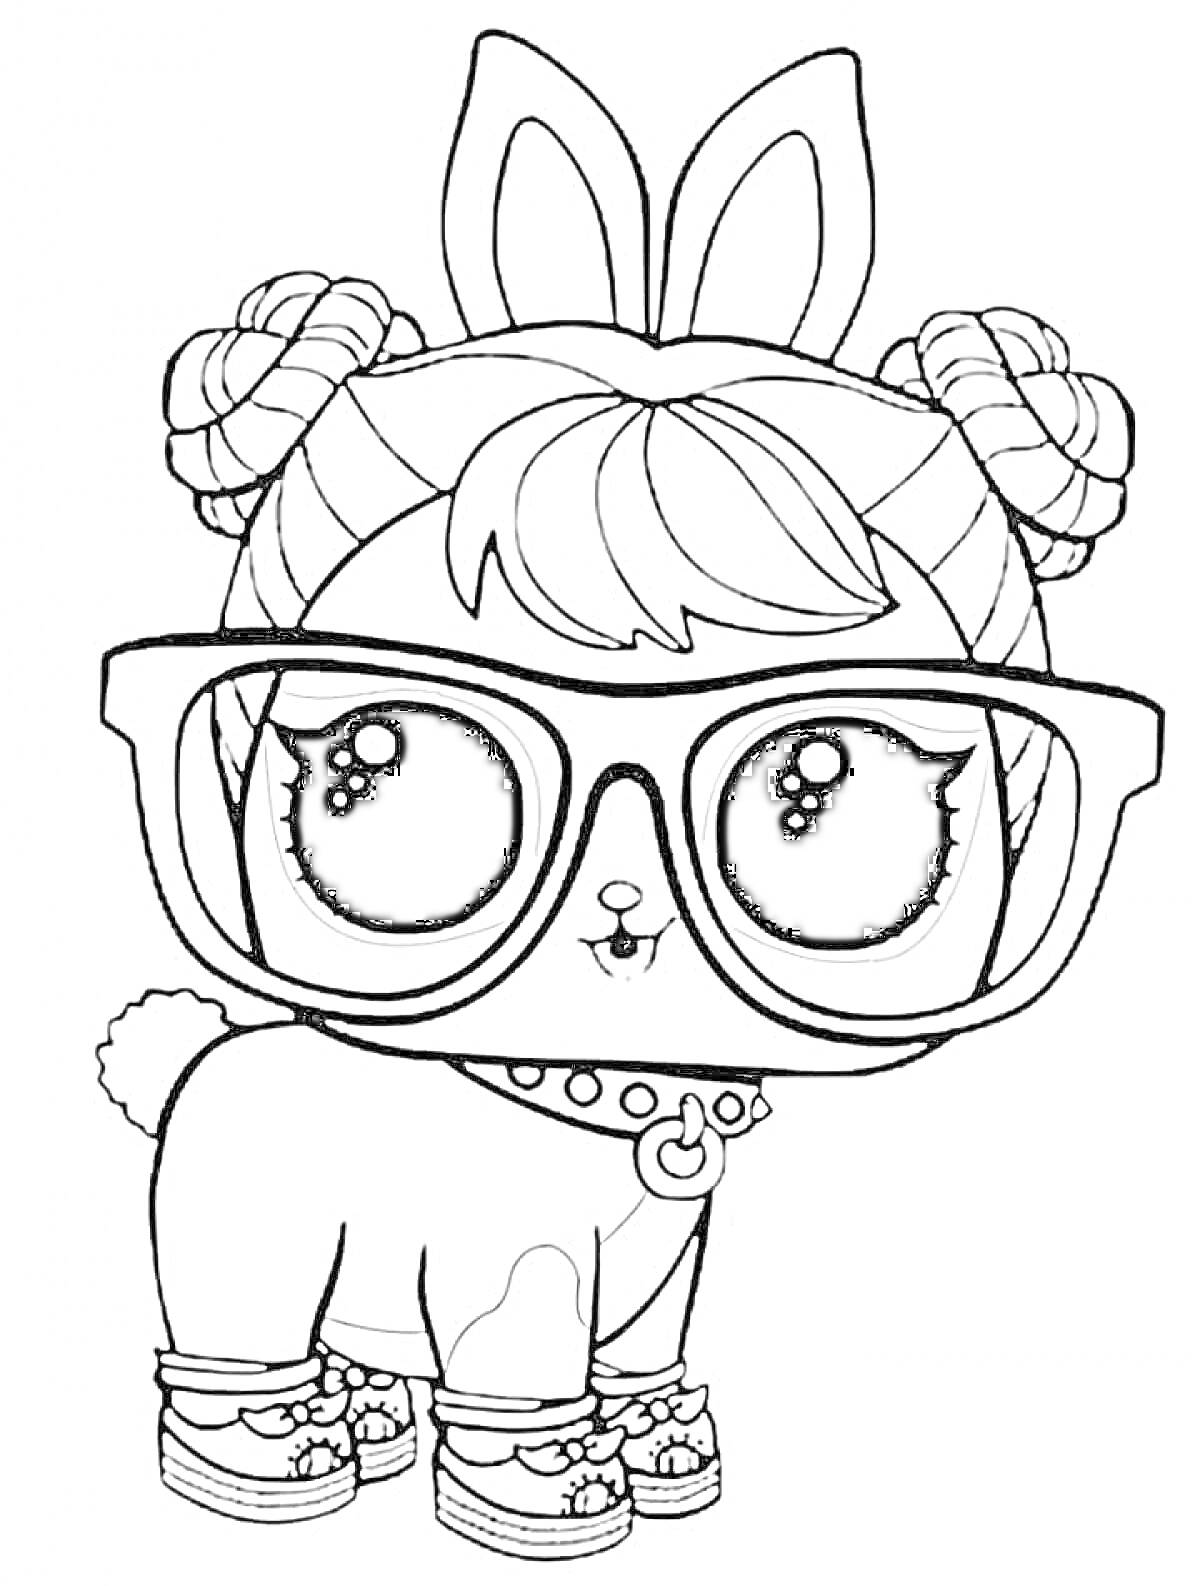 Раскраска Кукла LOL с большими очками, ушками зайчика, узелками на голове, хвостиком и собачьими лапками в обуви